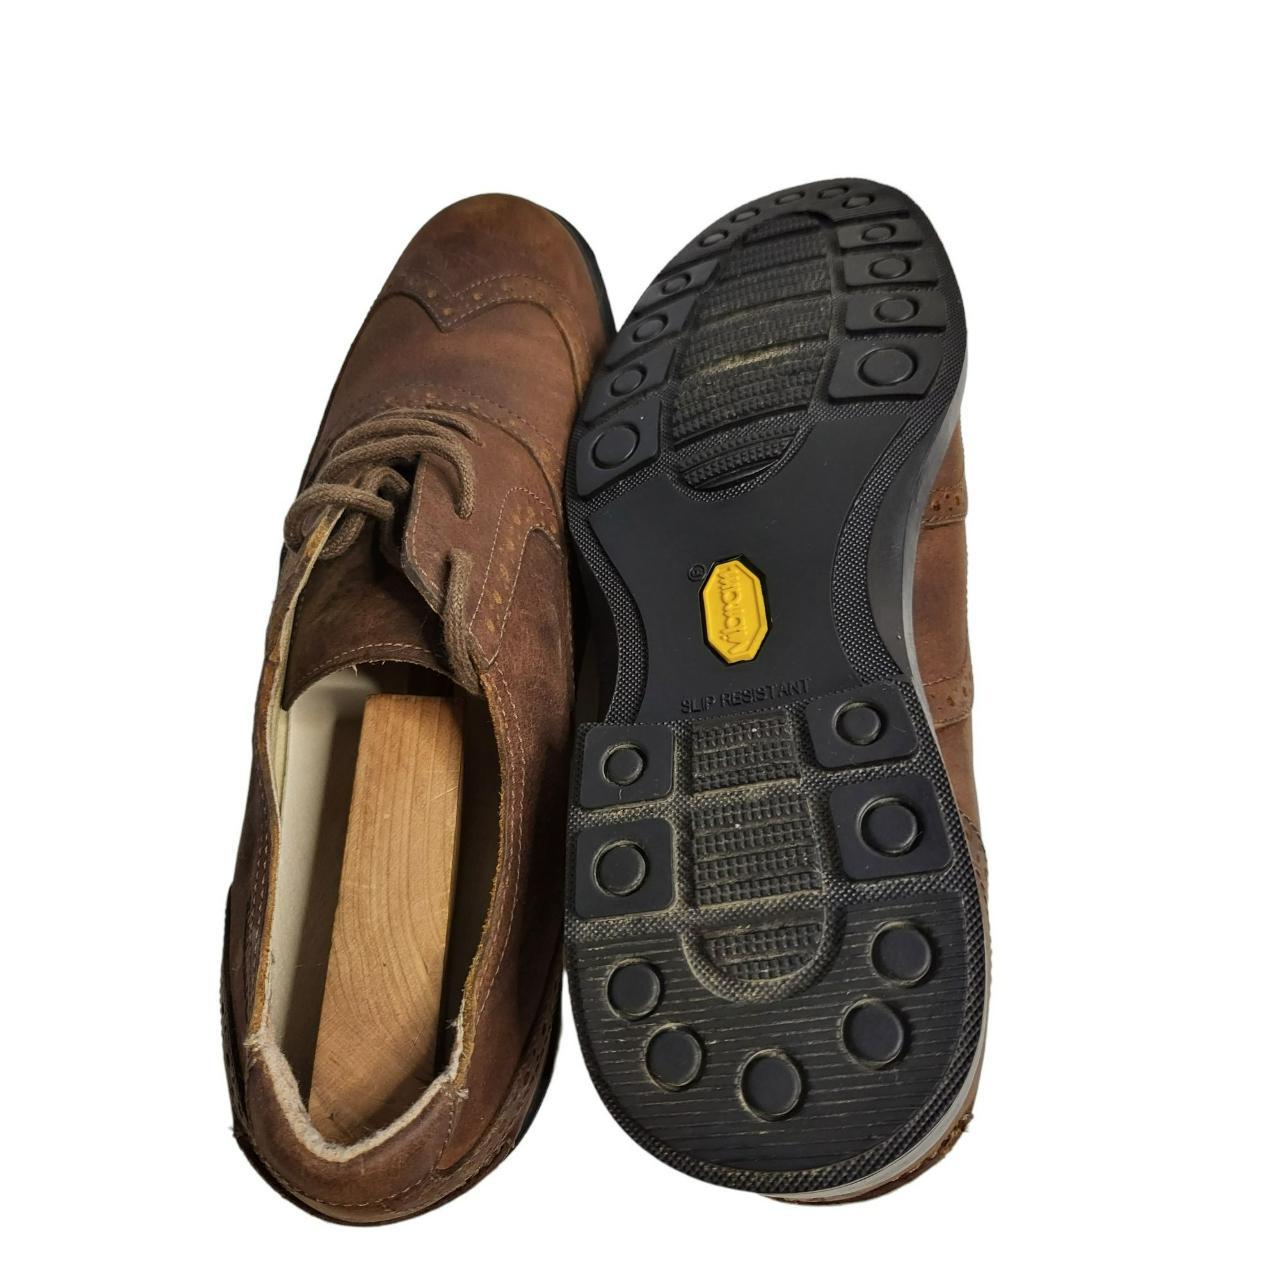 Sebago Drysides Leather Lace Up Sz 9 M Oxford Shoes... - Depop